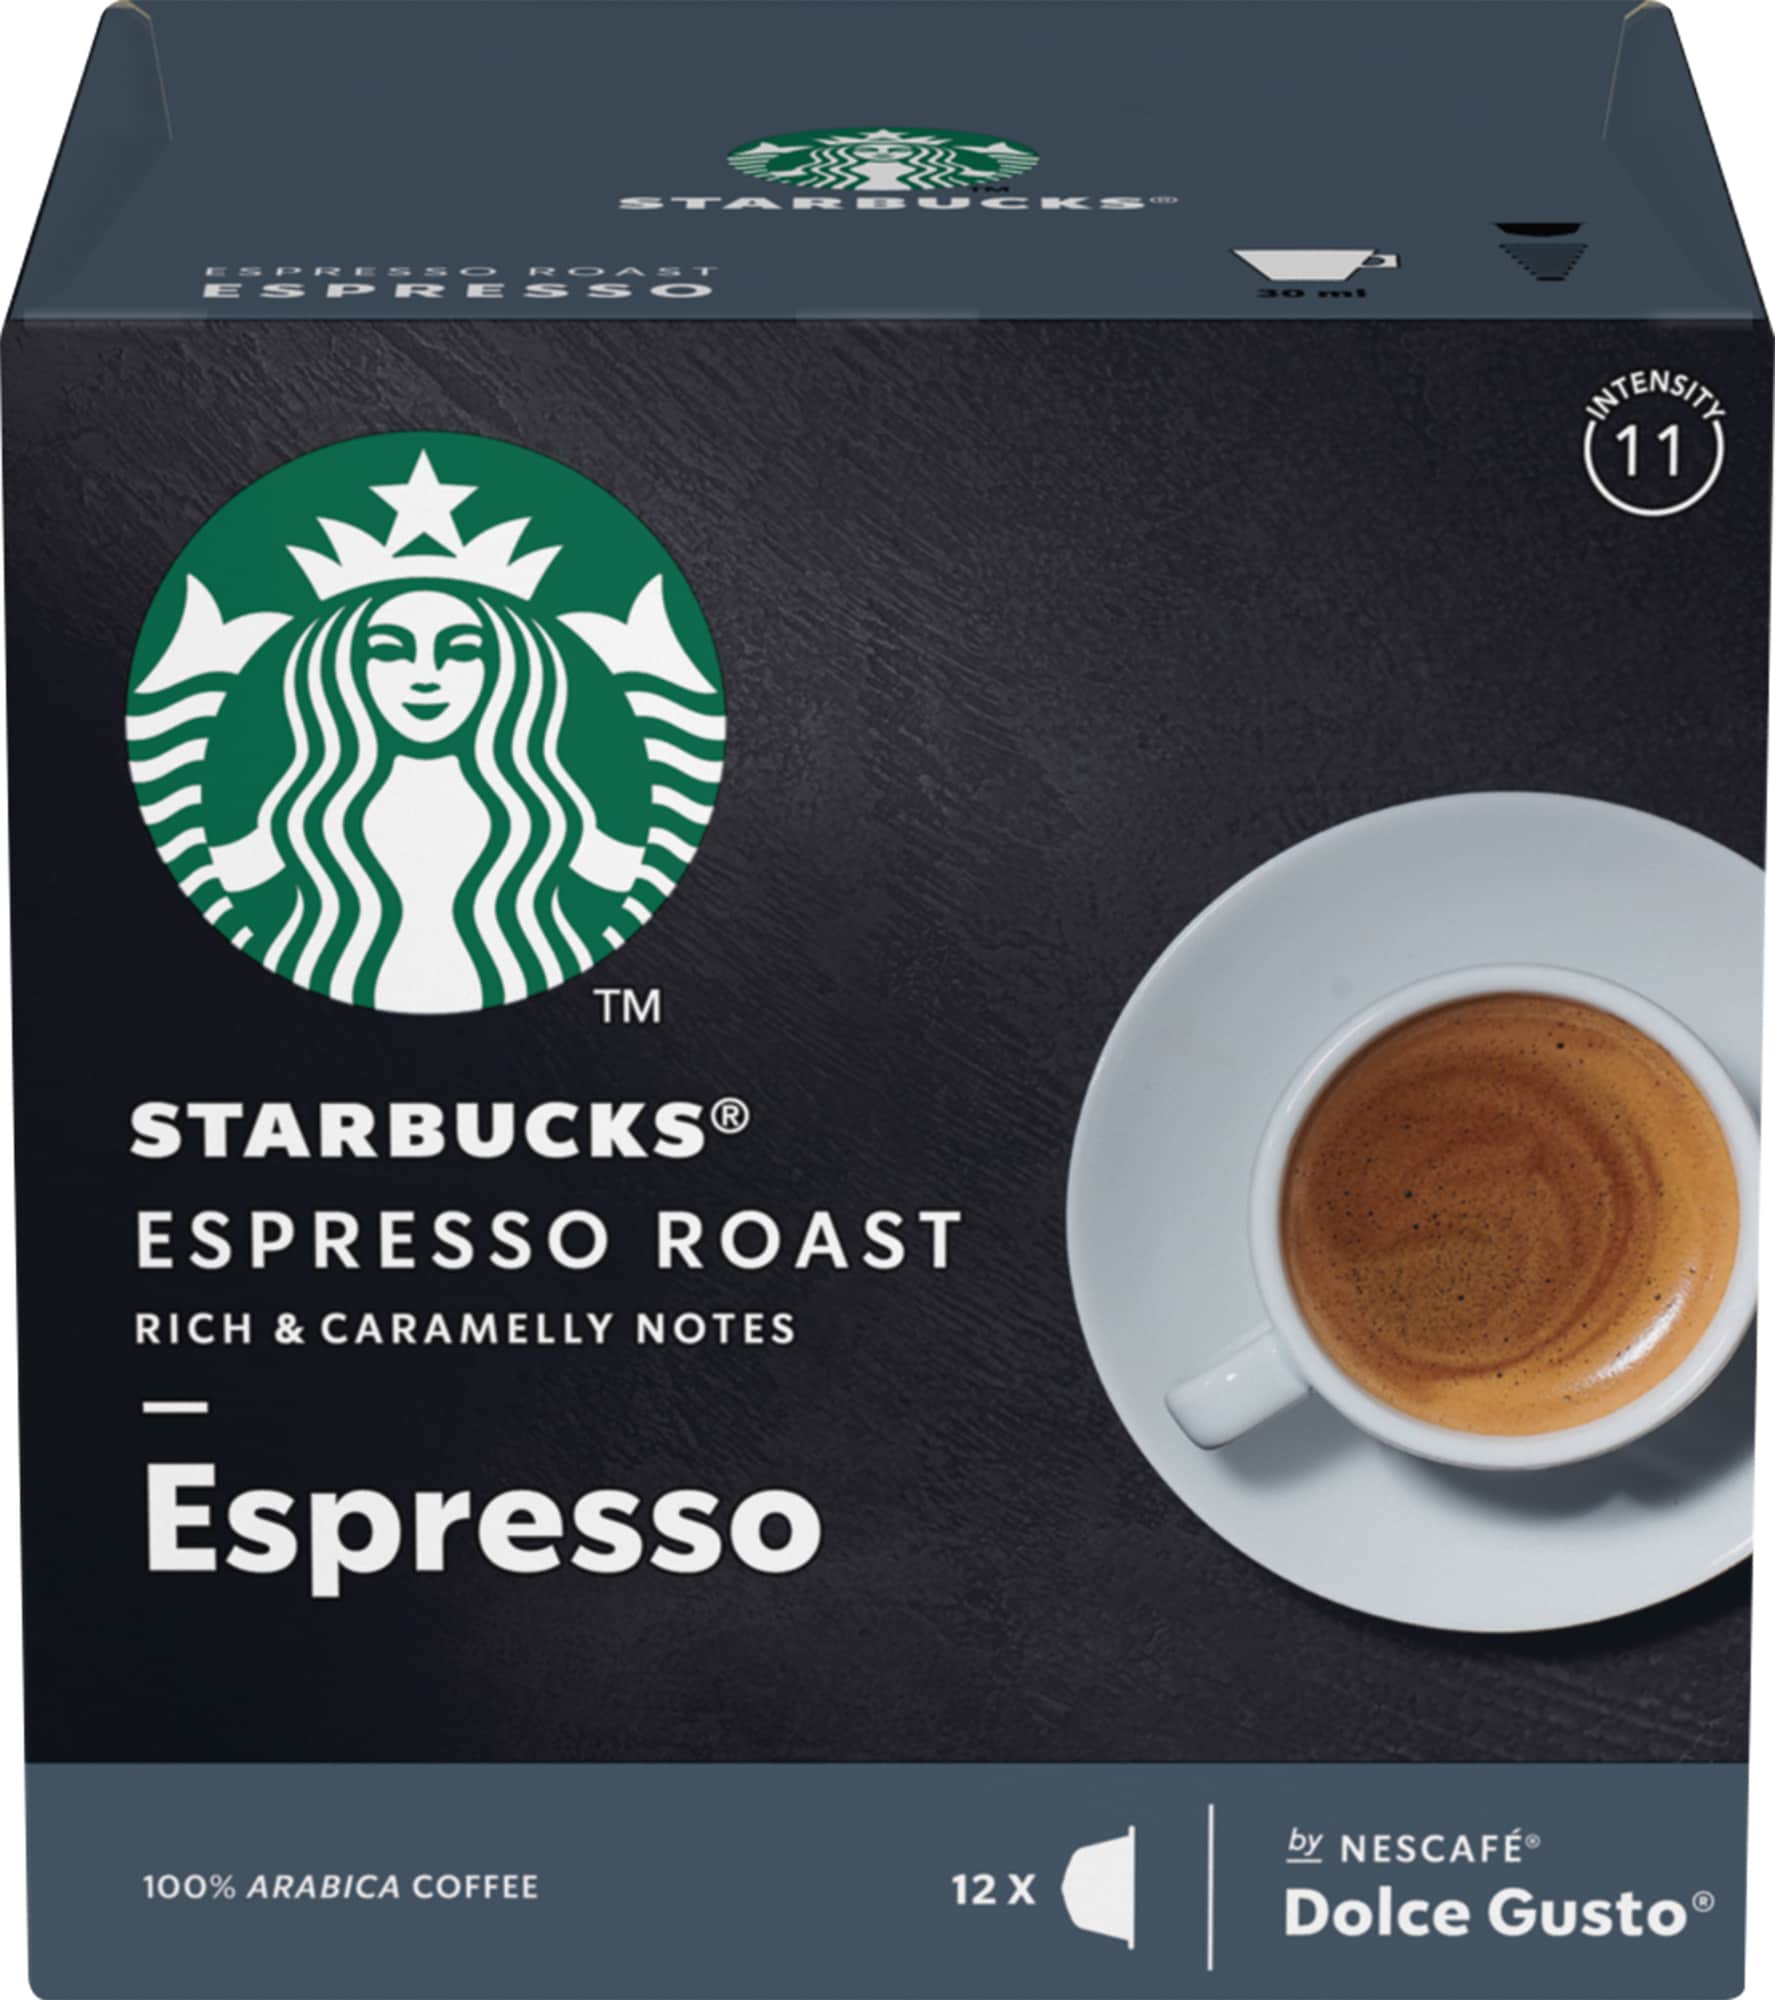 Billede af Starbucks Espresso Roast kaffekapsler fra Nescafé Dolce Gusto